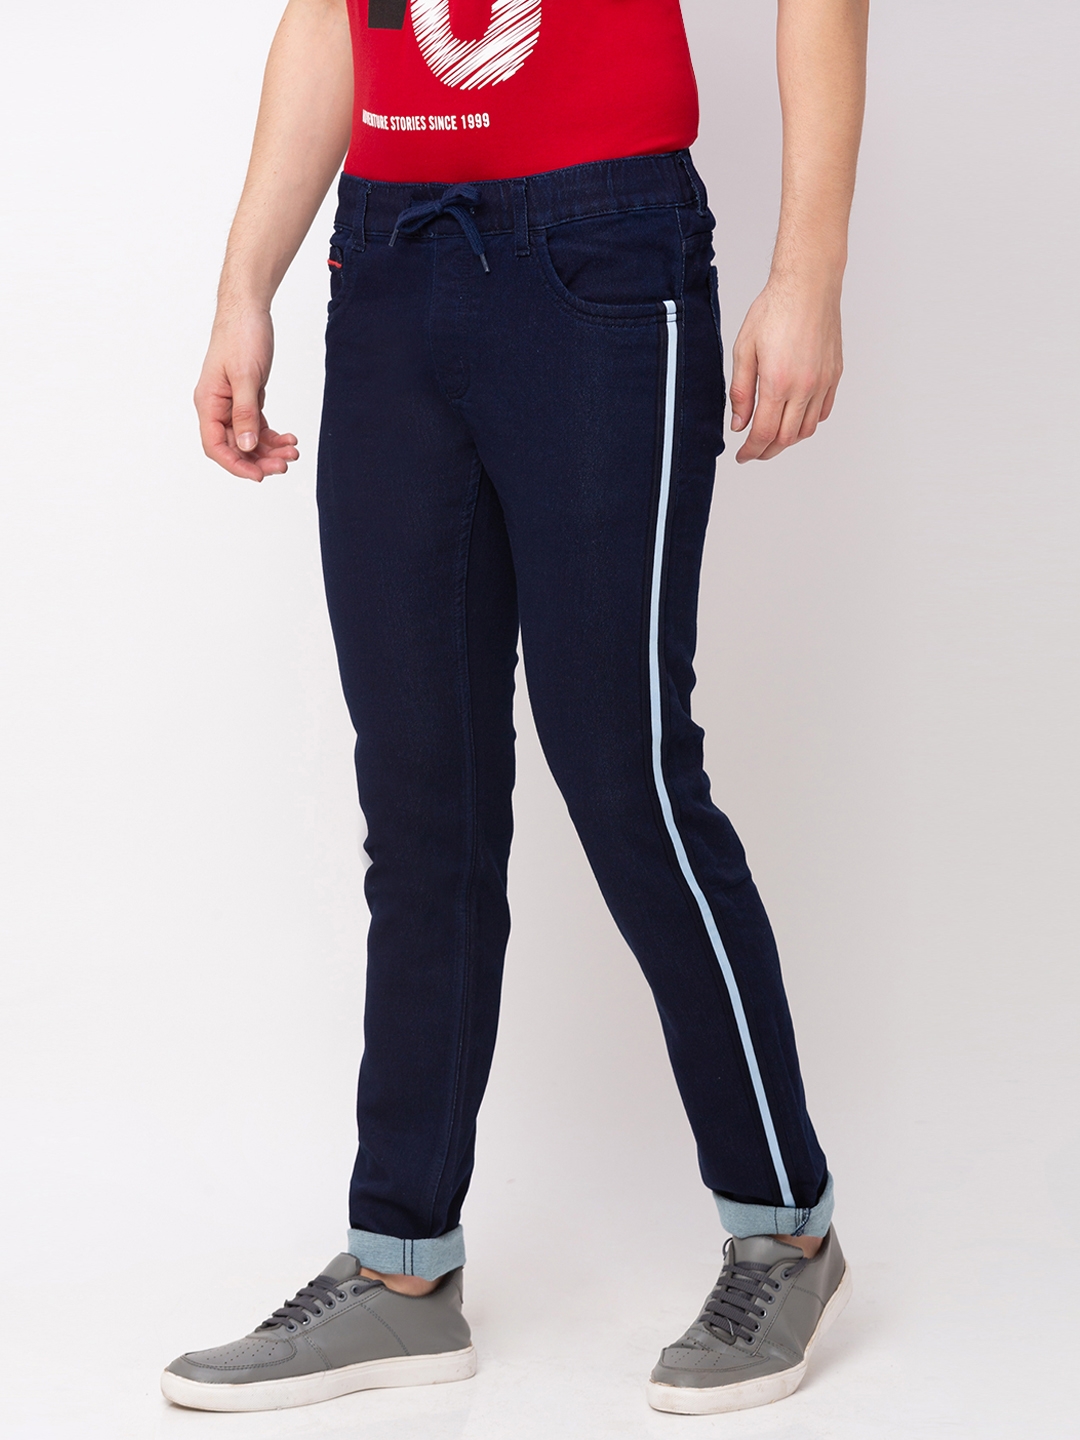 globus | Men's Blue Polycotton Striped Joggers Jeans 1